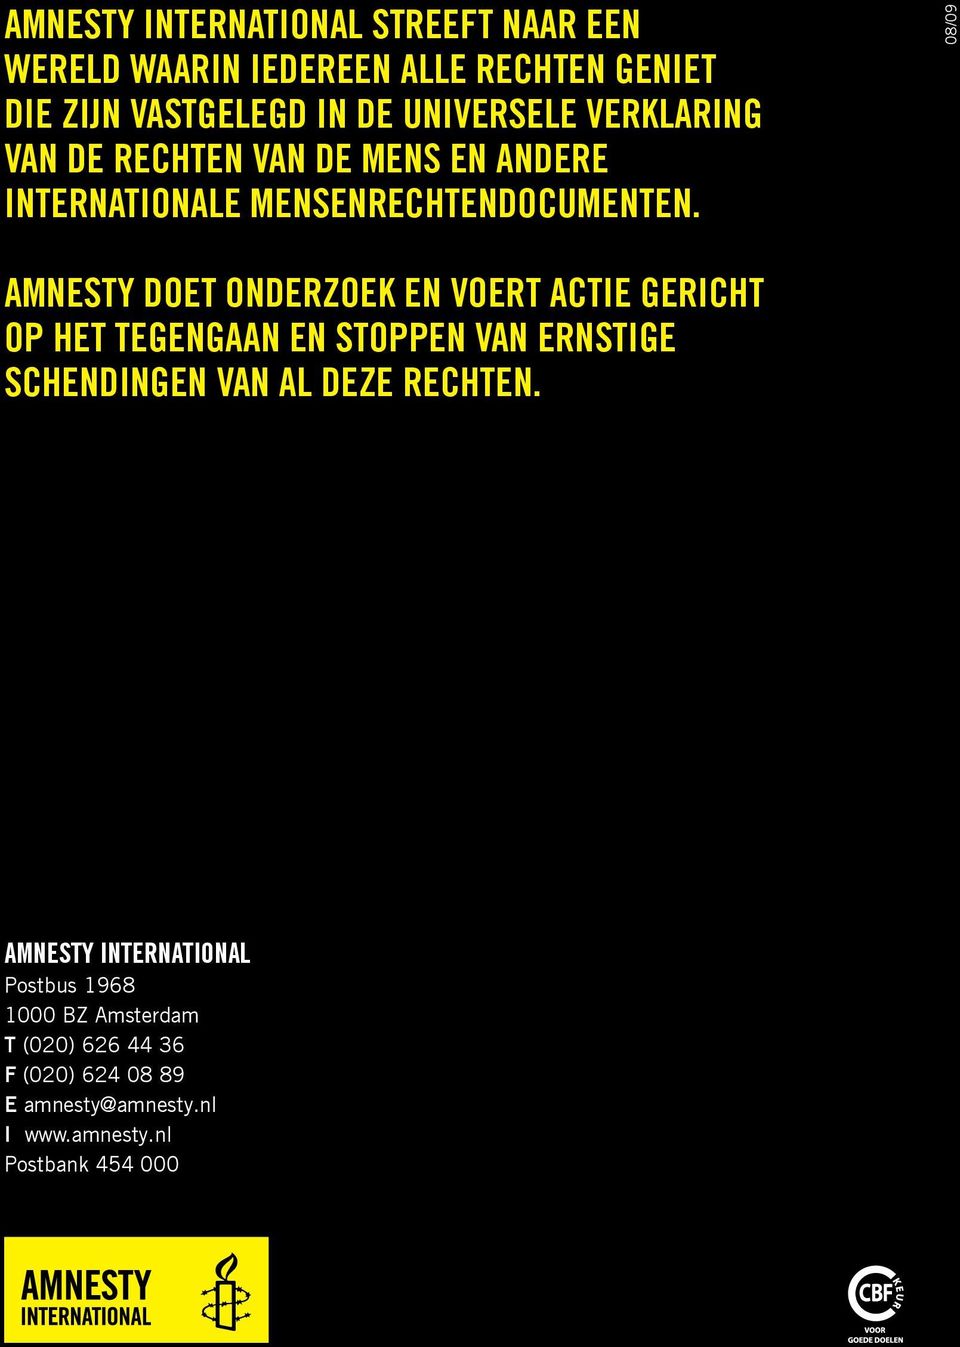 08/09 Amnesty doet onderzoek en voert actie gericht op het tegengaan en stoppen van ernstige schendingen van al deze